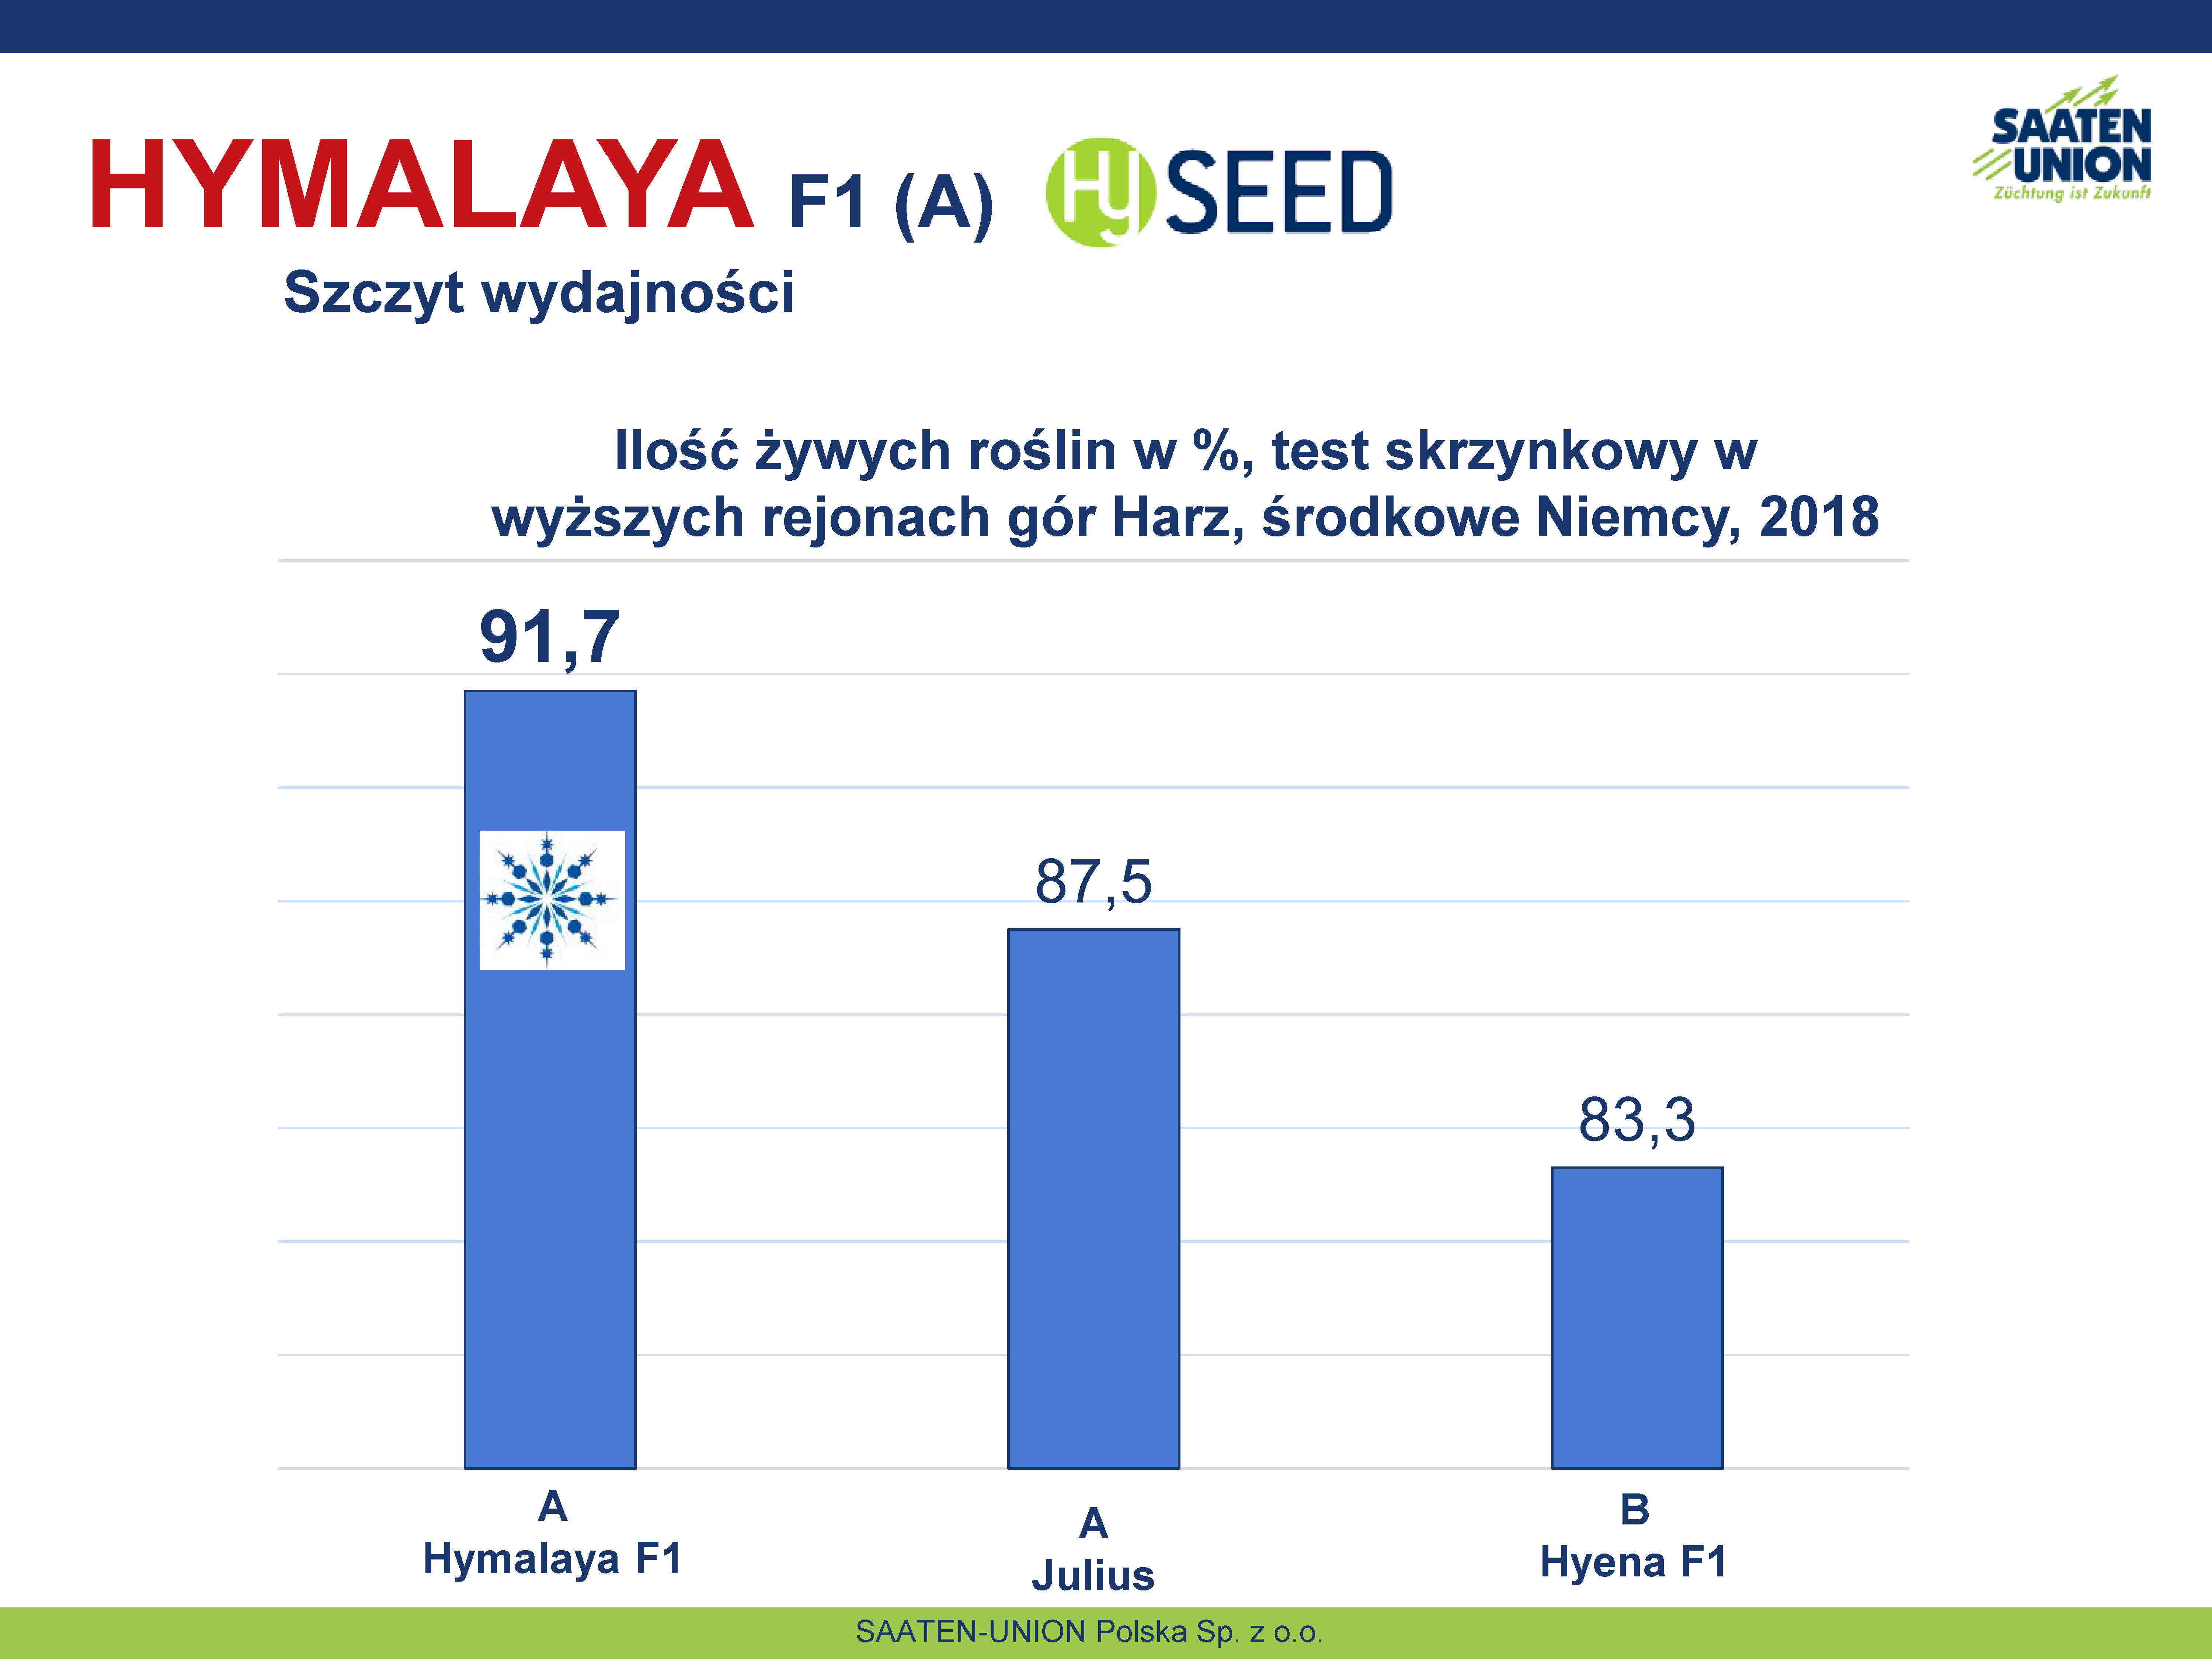 SU Hymalaya - Ilość żywych roślin